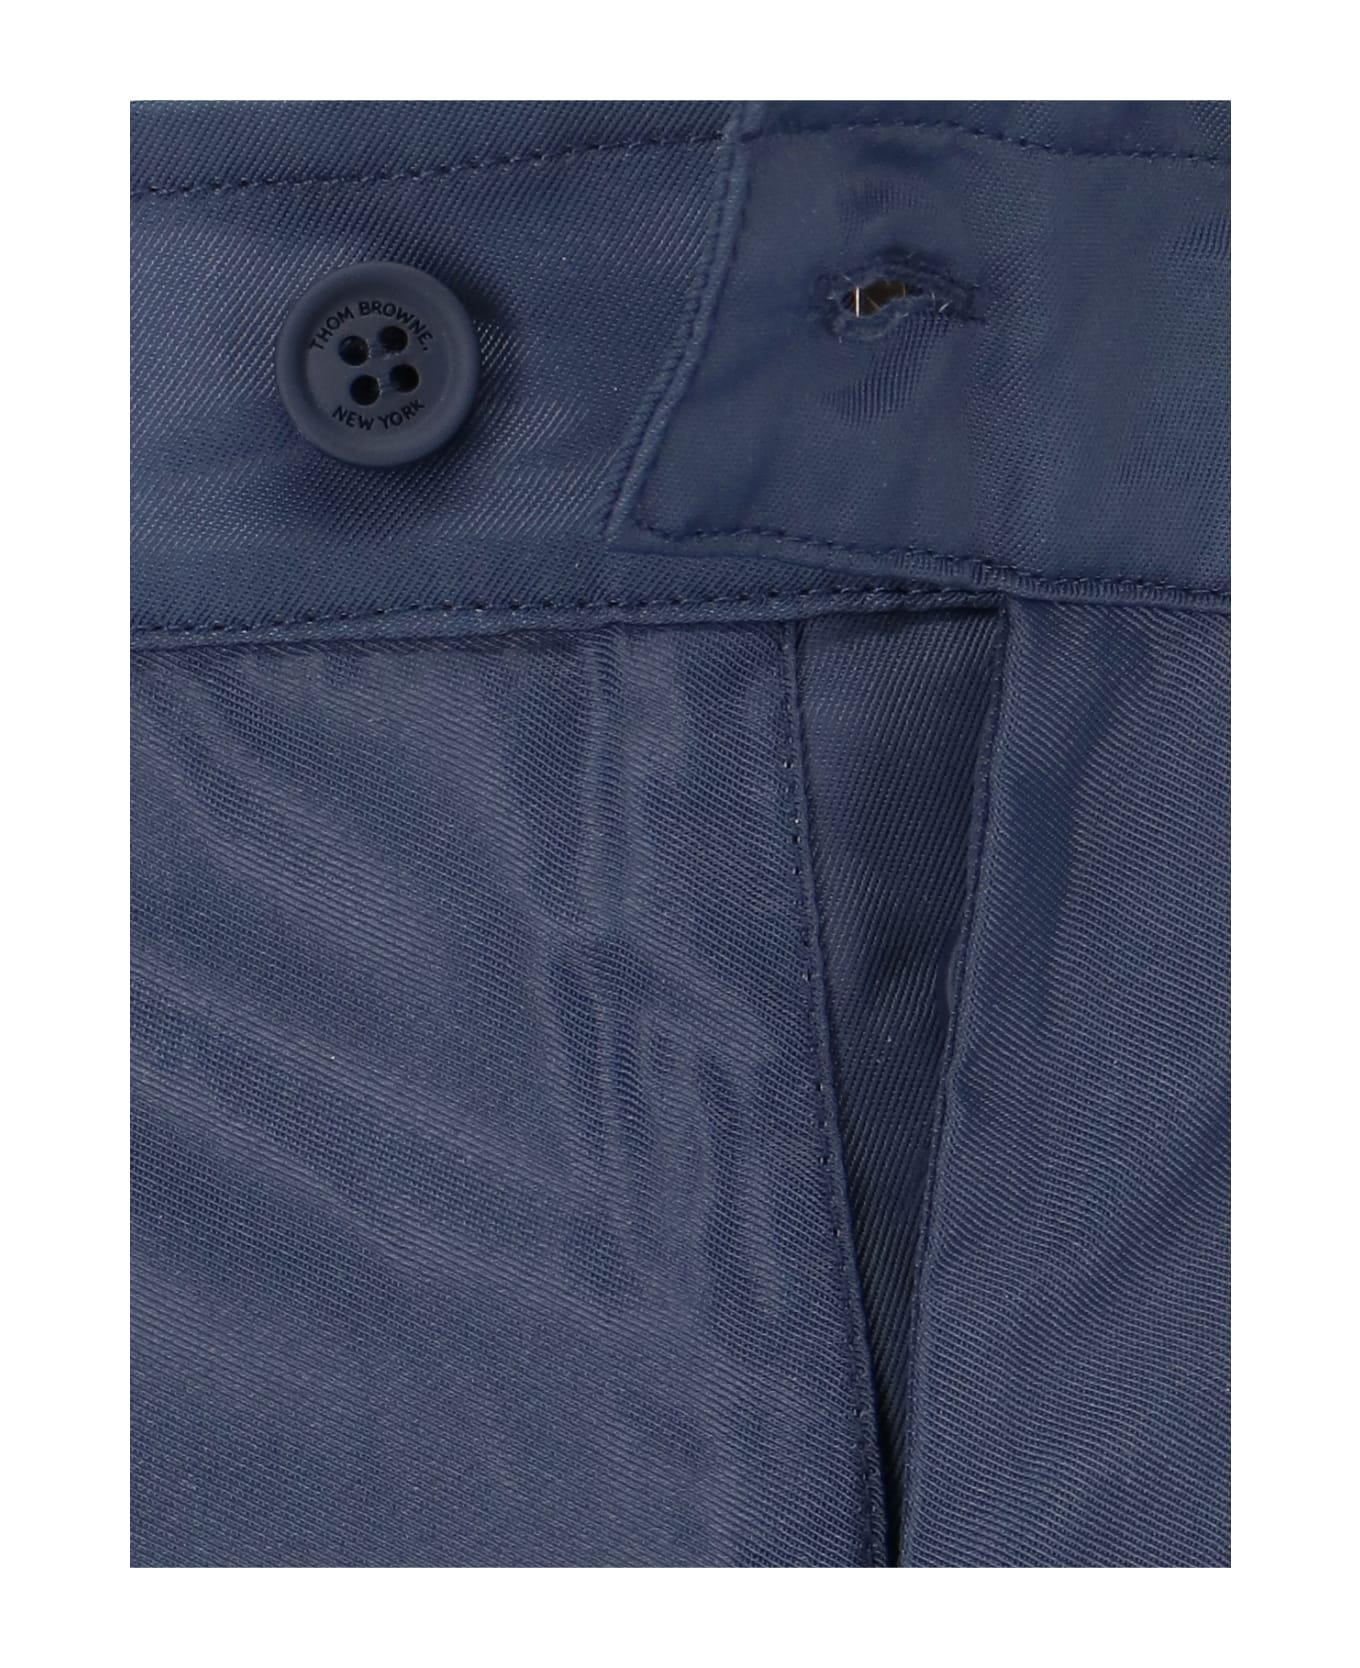 Thom Browne 4-bar Board Shorts - Blue 水着